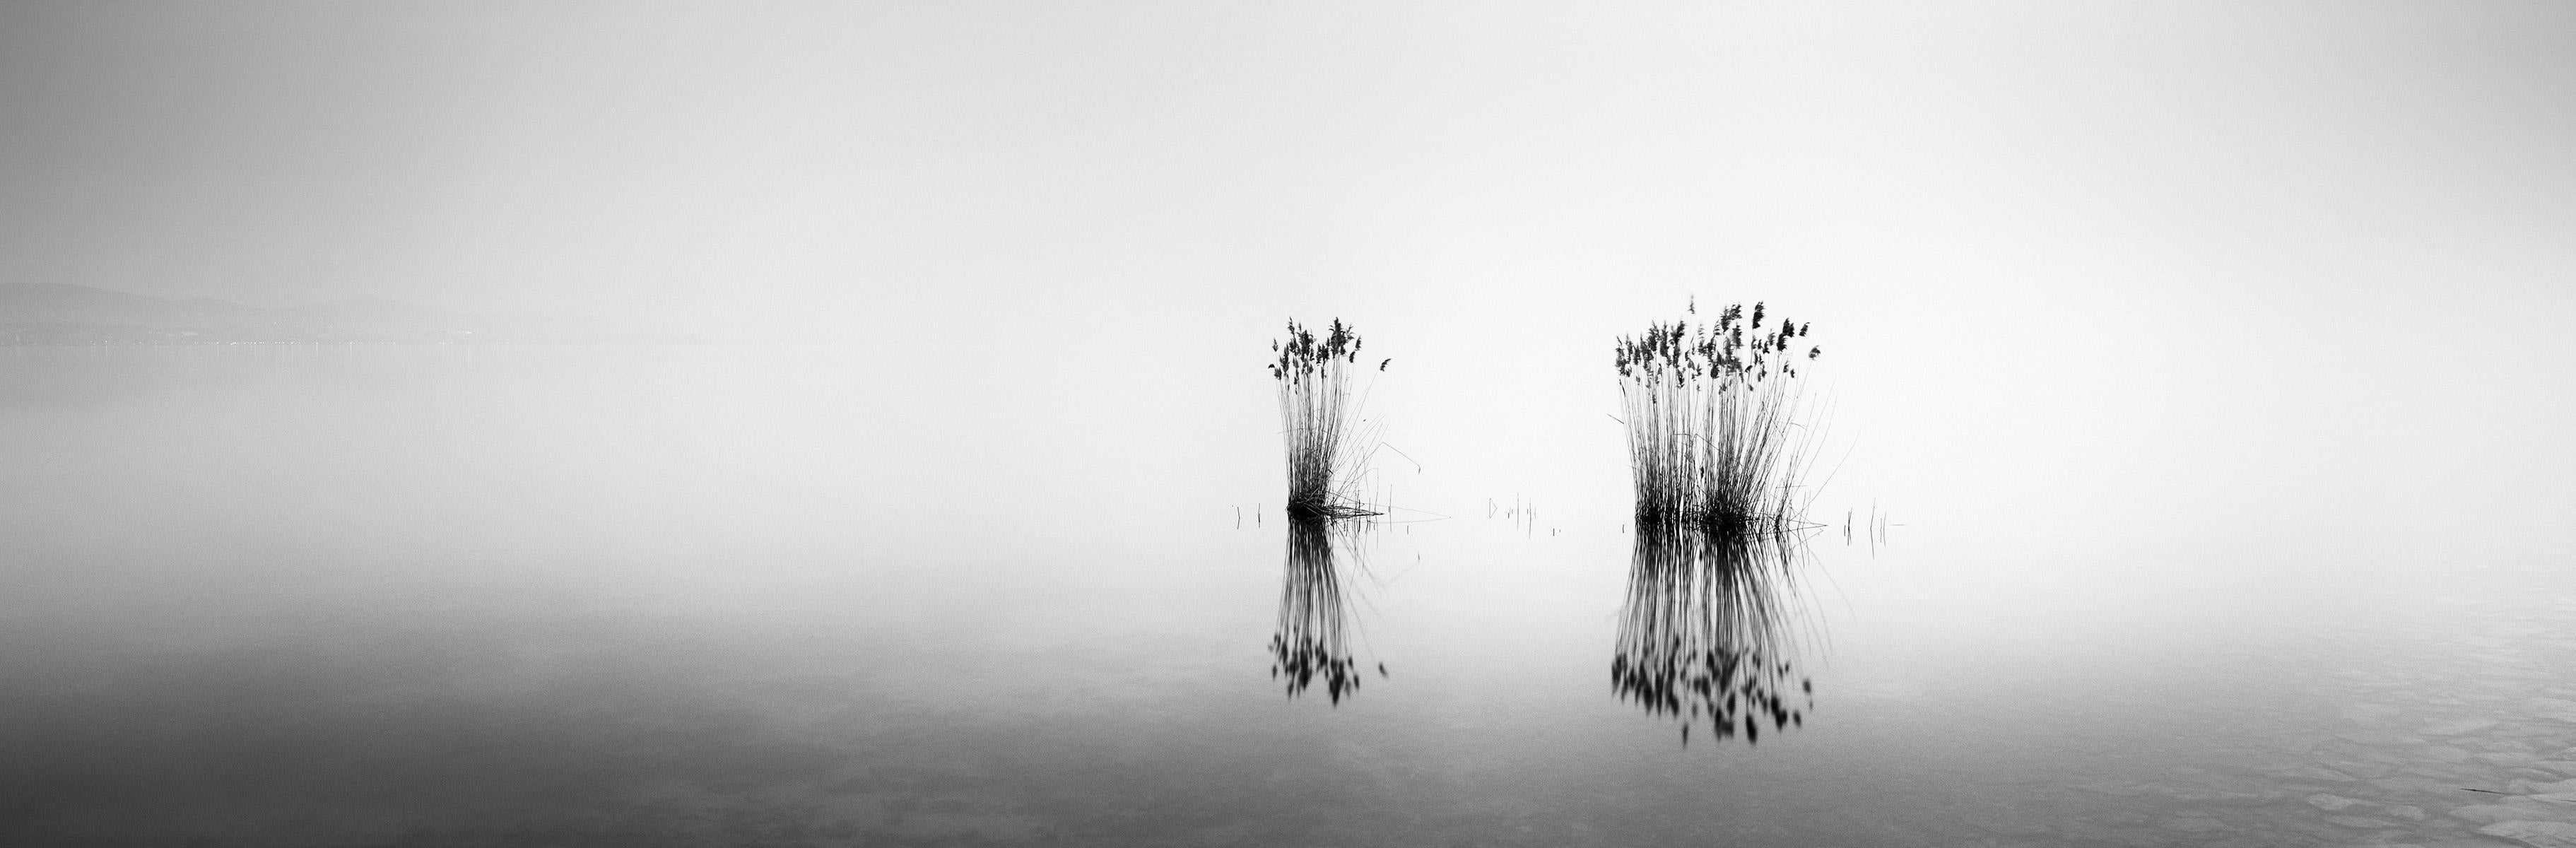 Phragmites Panorama, Hungary, minimalism black and white photography, landscape